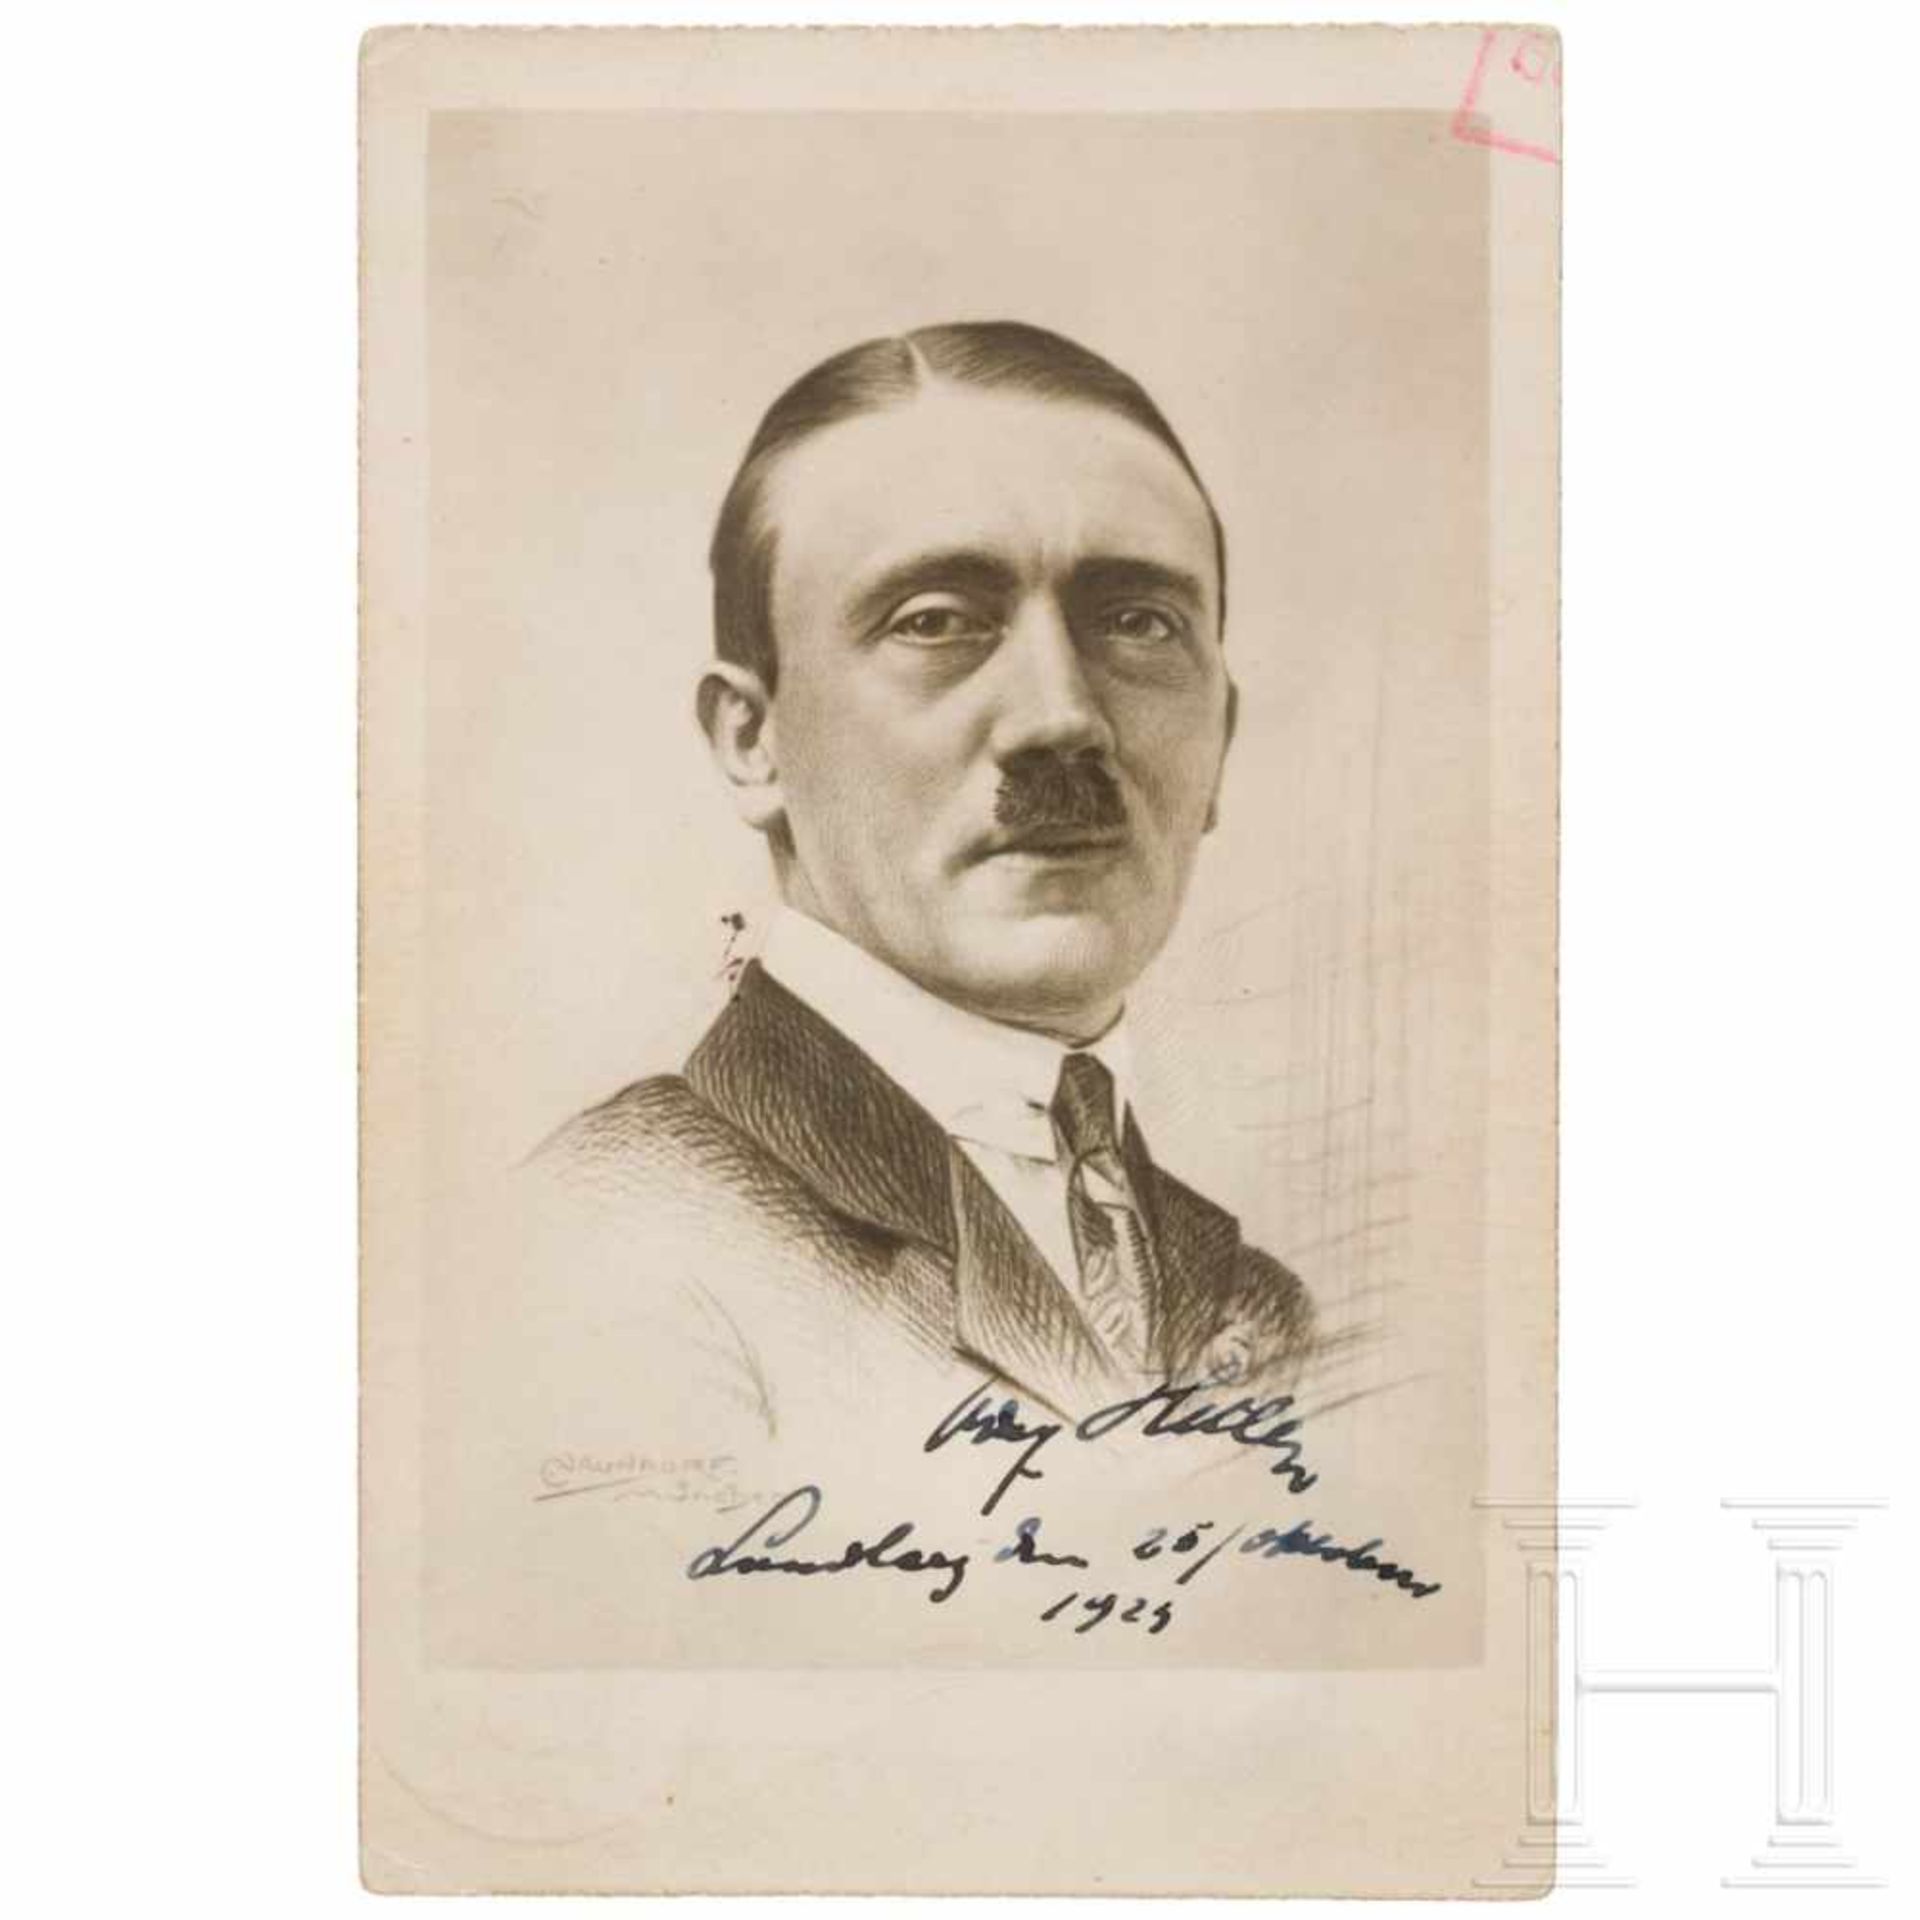 Willi Briemann jr. - signierte Hitler-Postkarte aus der Landsberger FestungshaftPostkarte mit